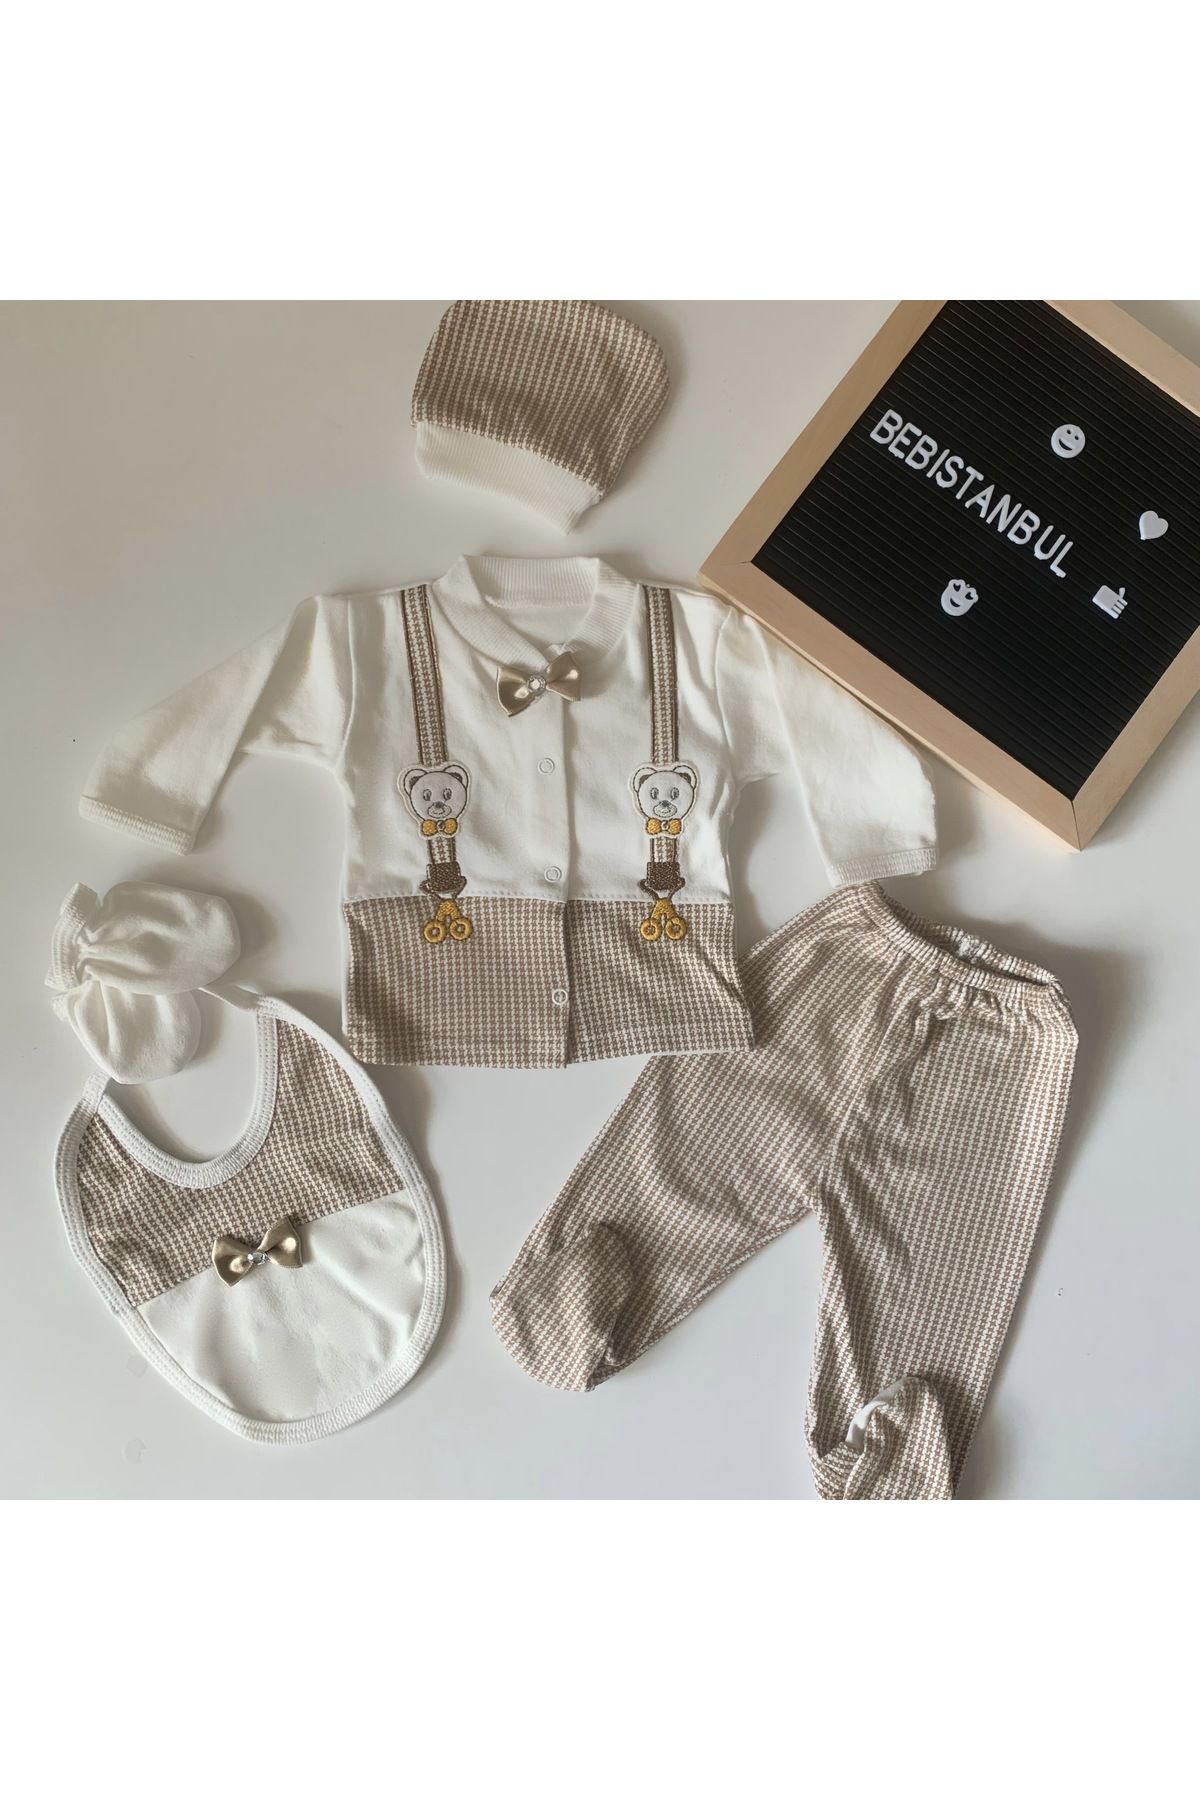 NECİXX (KUTULU) Ayıcıklı Kahve Papyonlu Yenidoğan Kıyafetleri Bebek Kıyafetleri 5’li Hastahane Çıkış Seti